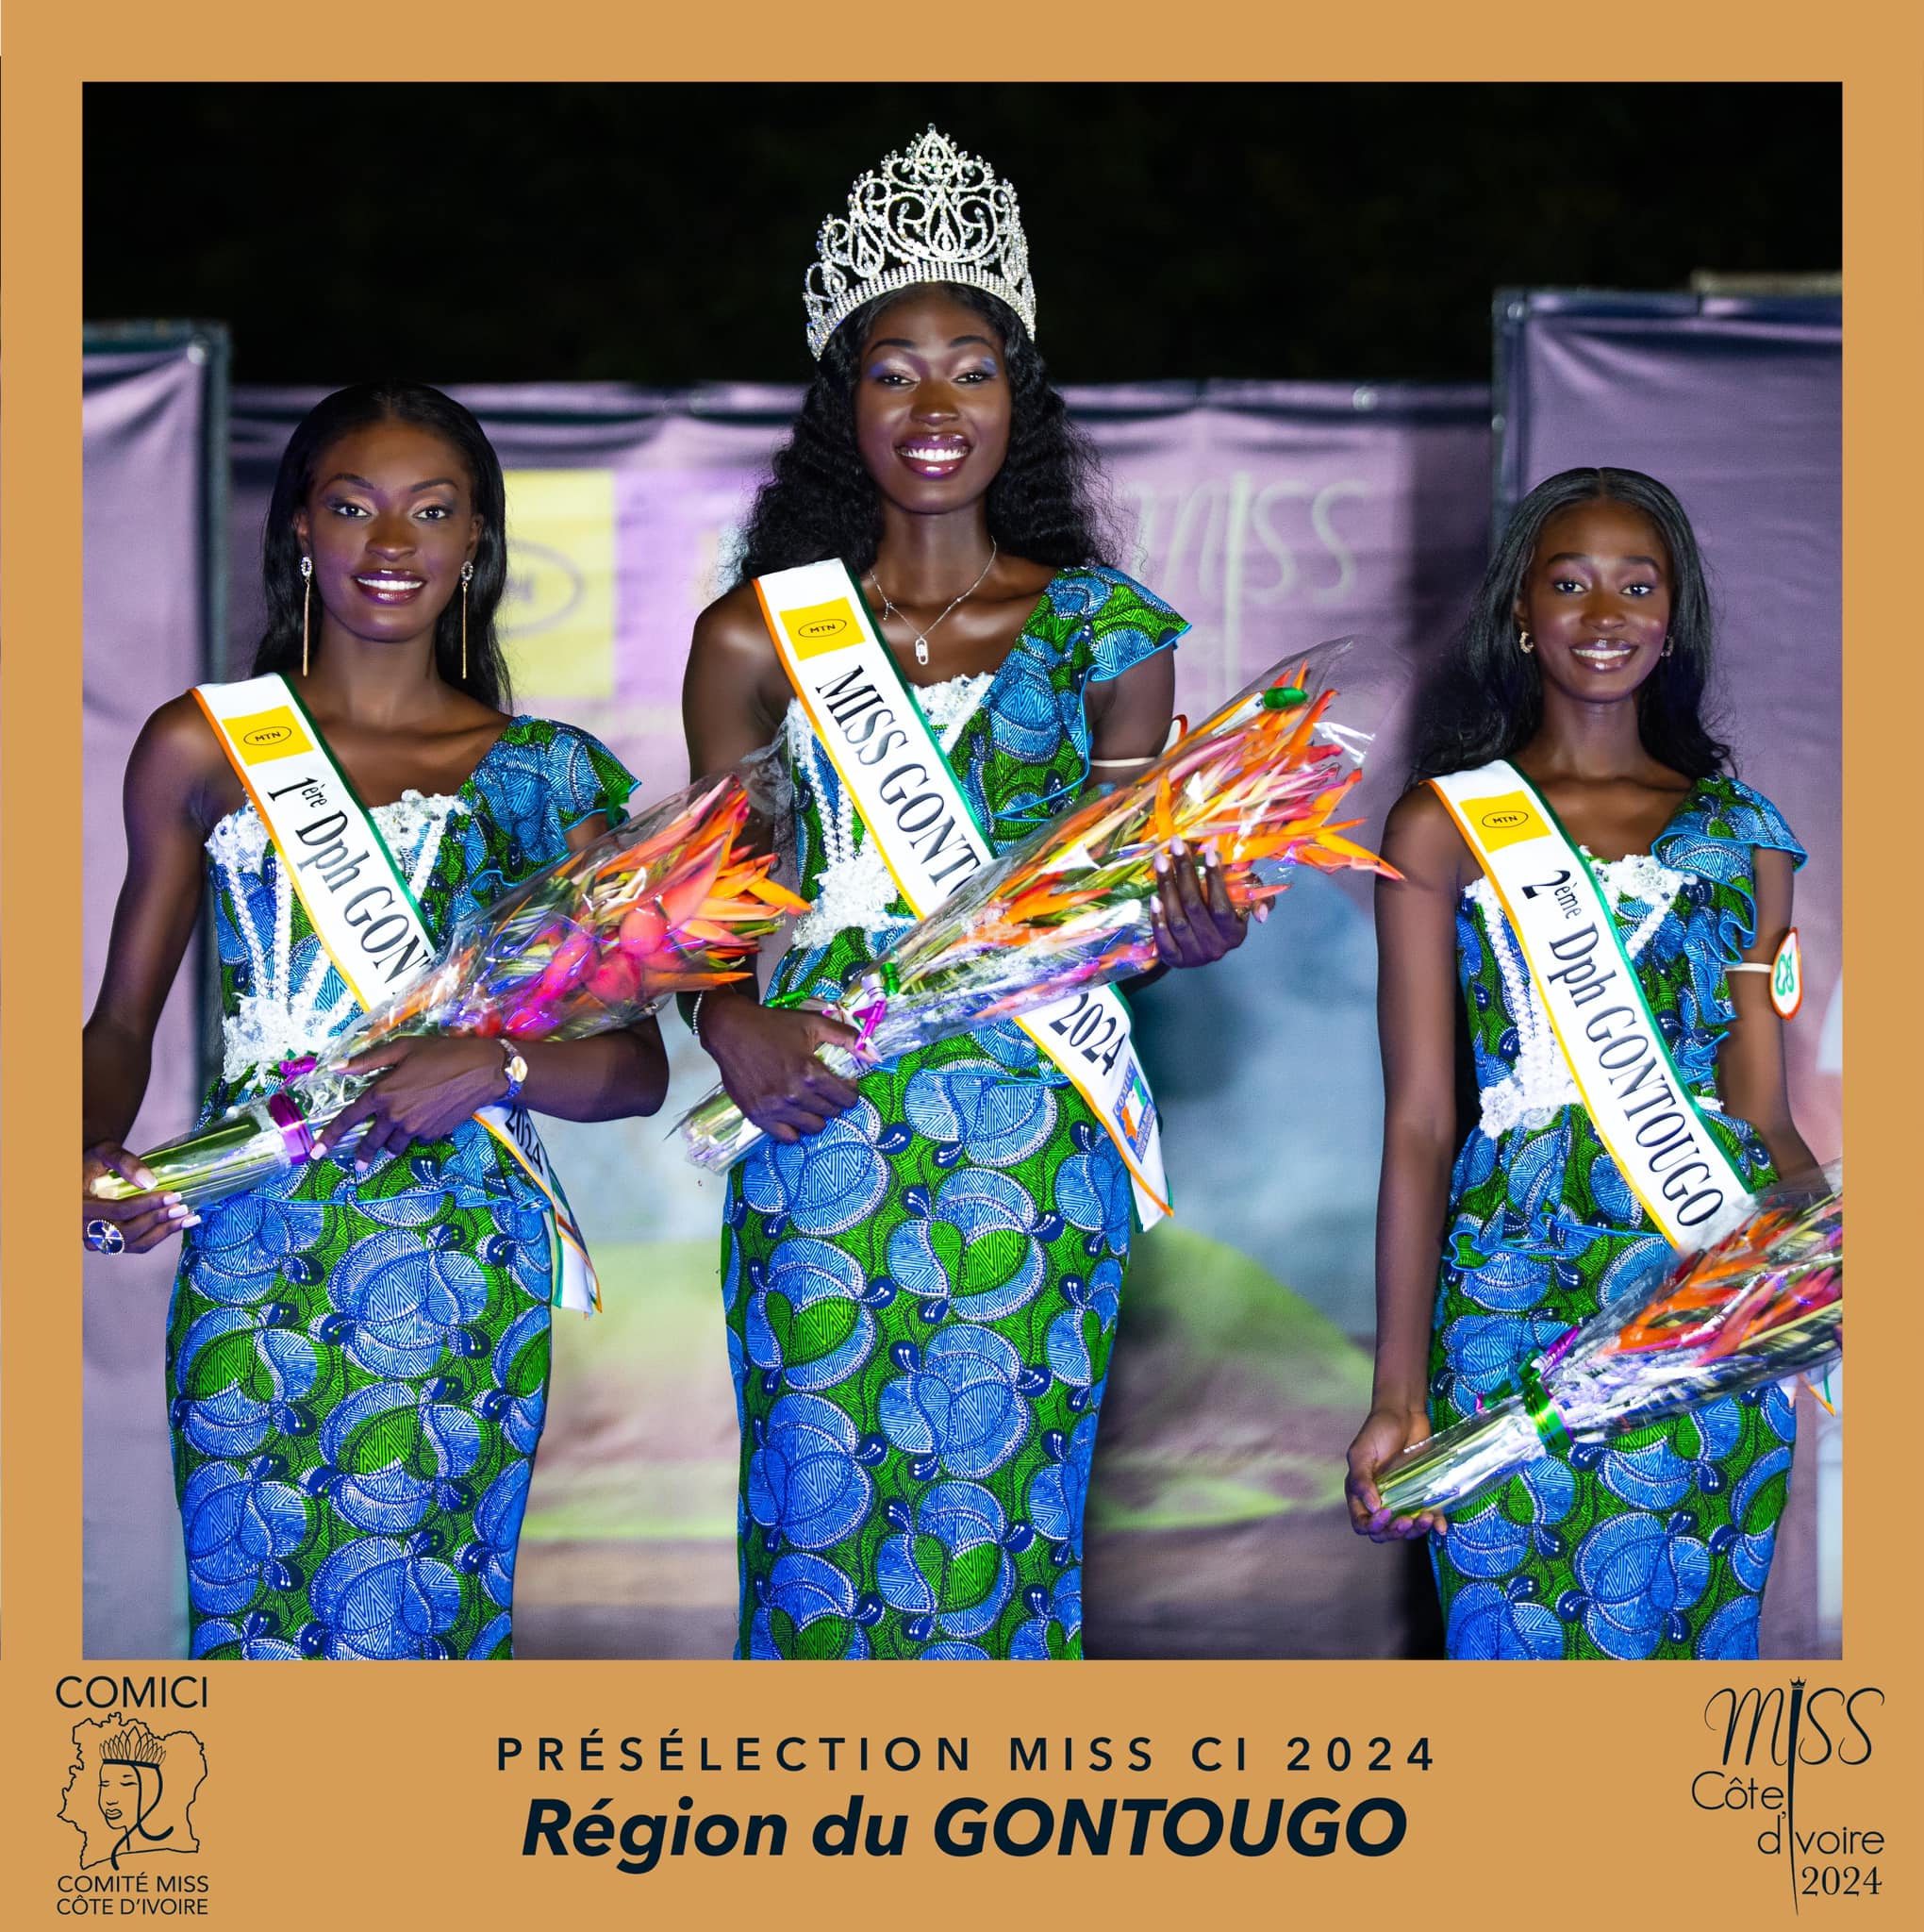 Preselection 7 Miss Cote d'Ivoire 2024 -  Finalist  Miss COULIBALY Fatoumata - Miss BONDOUKOU - District GONTOUGO